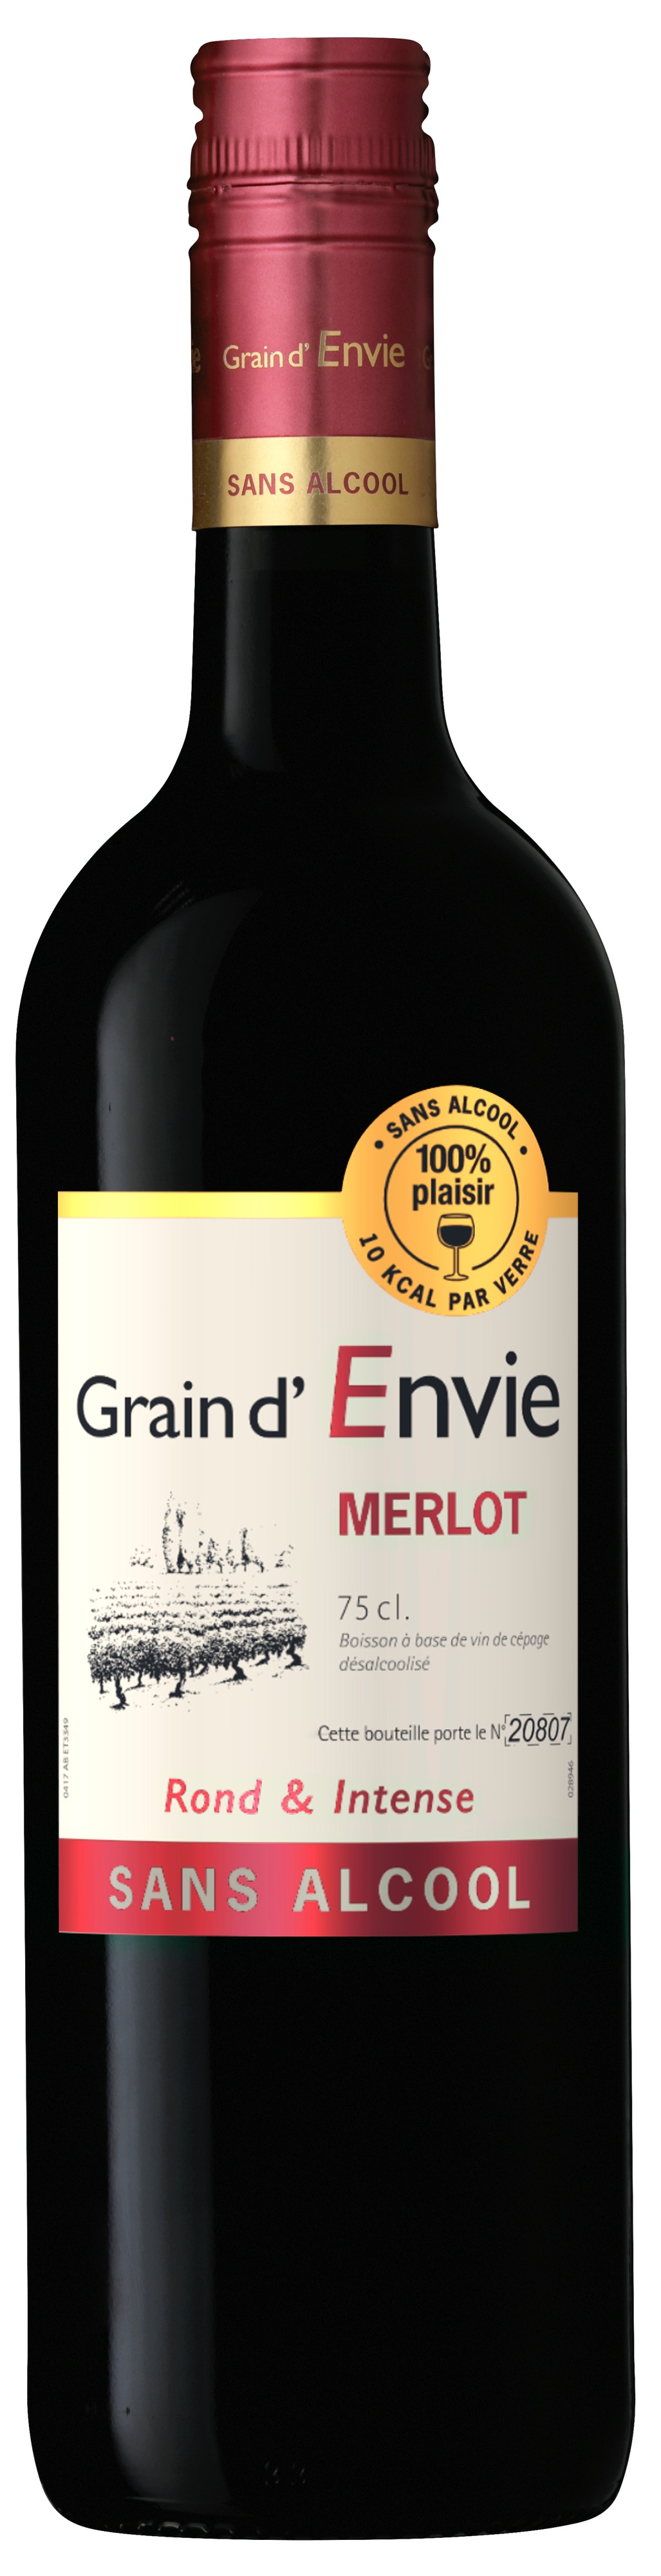 Grain d'Envie - Merlot - alkoholfreier Rotwein 0,75l